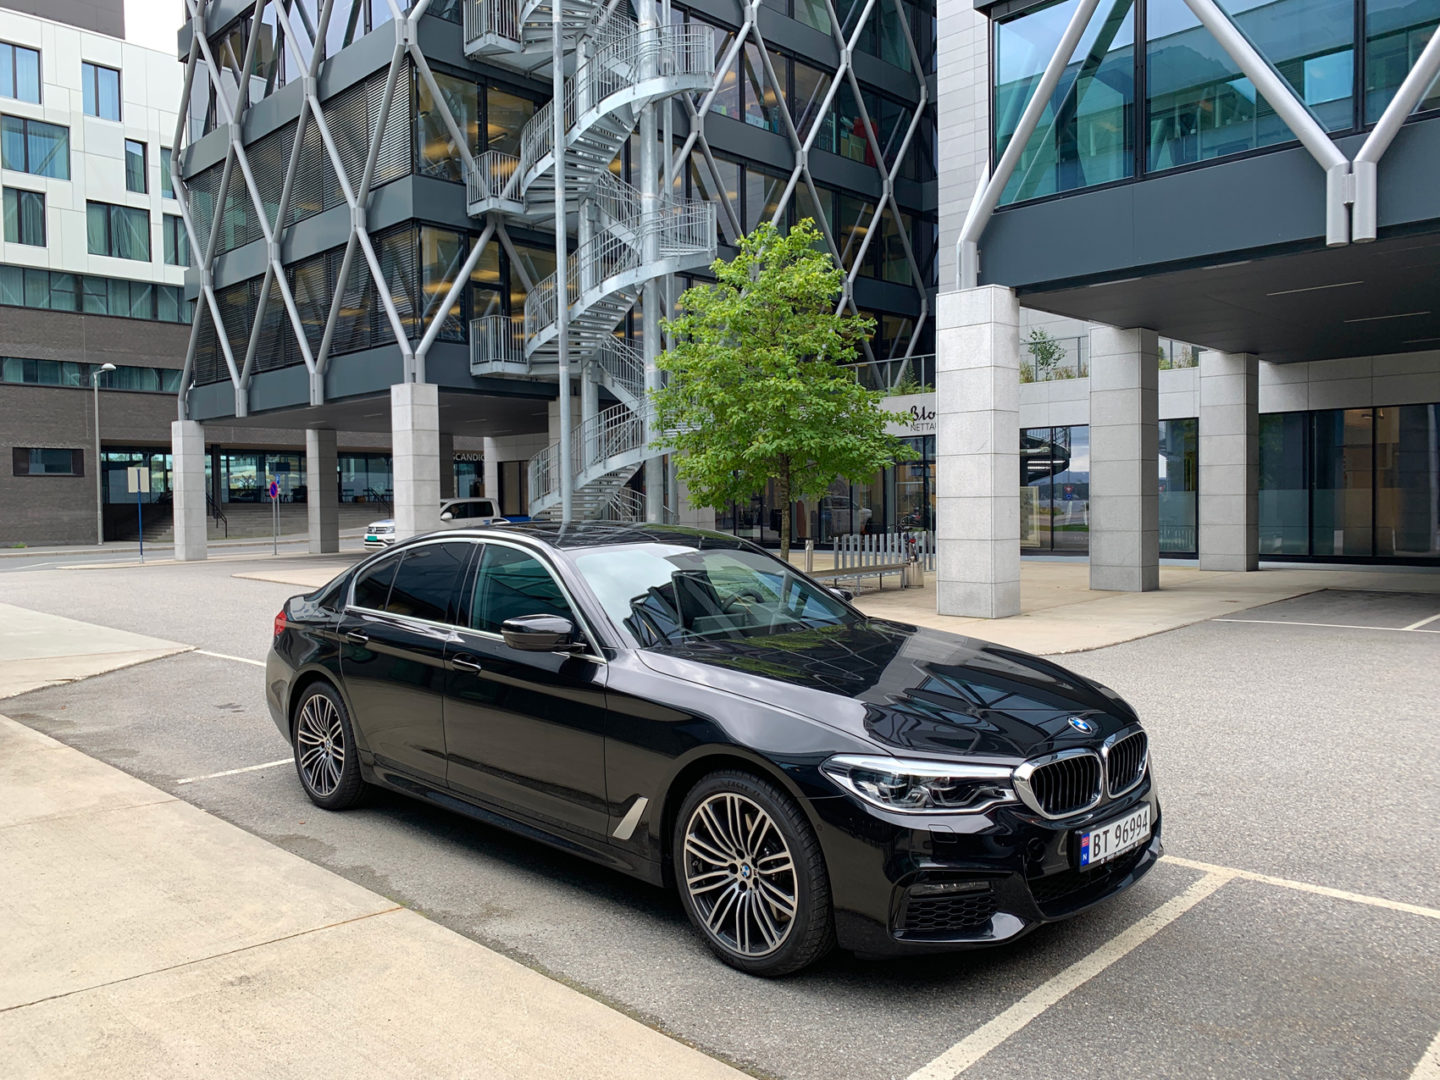 Langtest av BMW 530e xDrive (sept 2019) - Nybiltester